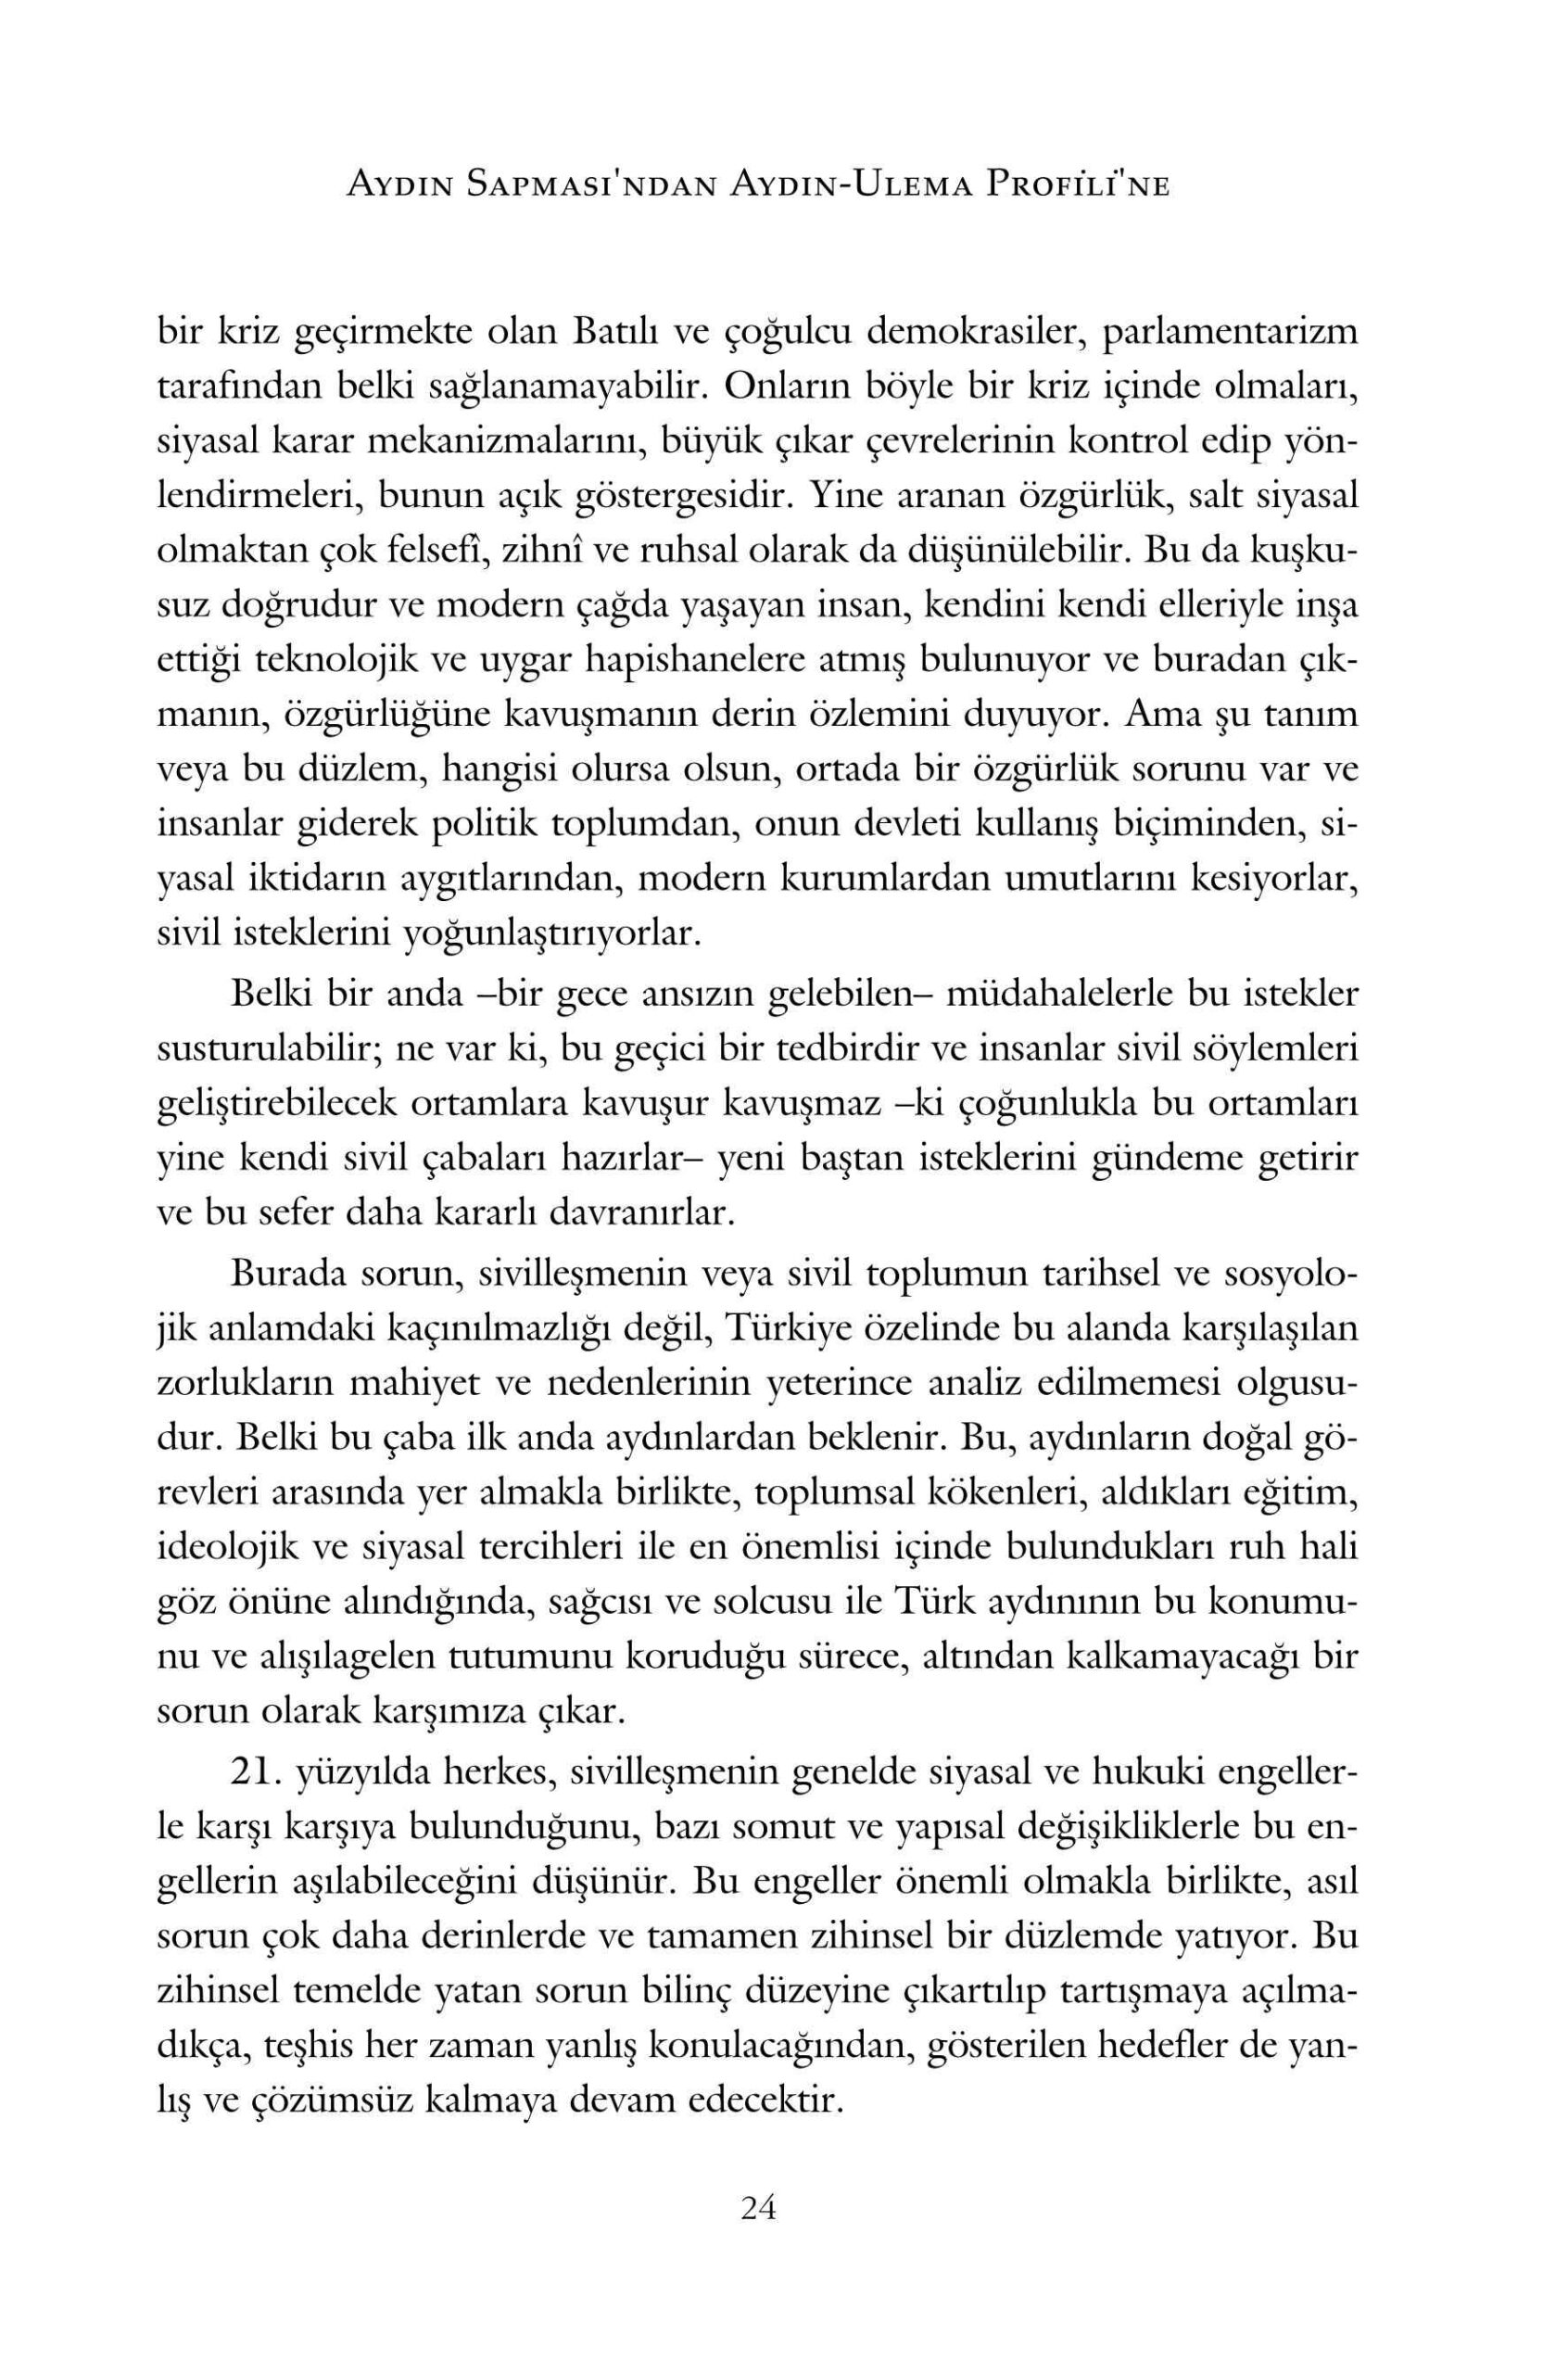 Ali Bulac - Aydin Sapmasindan Aydin Ulema Profiline - IsikAkademiY.pdf, 167-Sayfa 